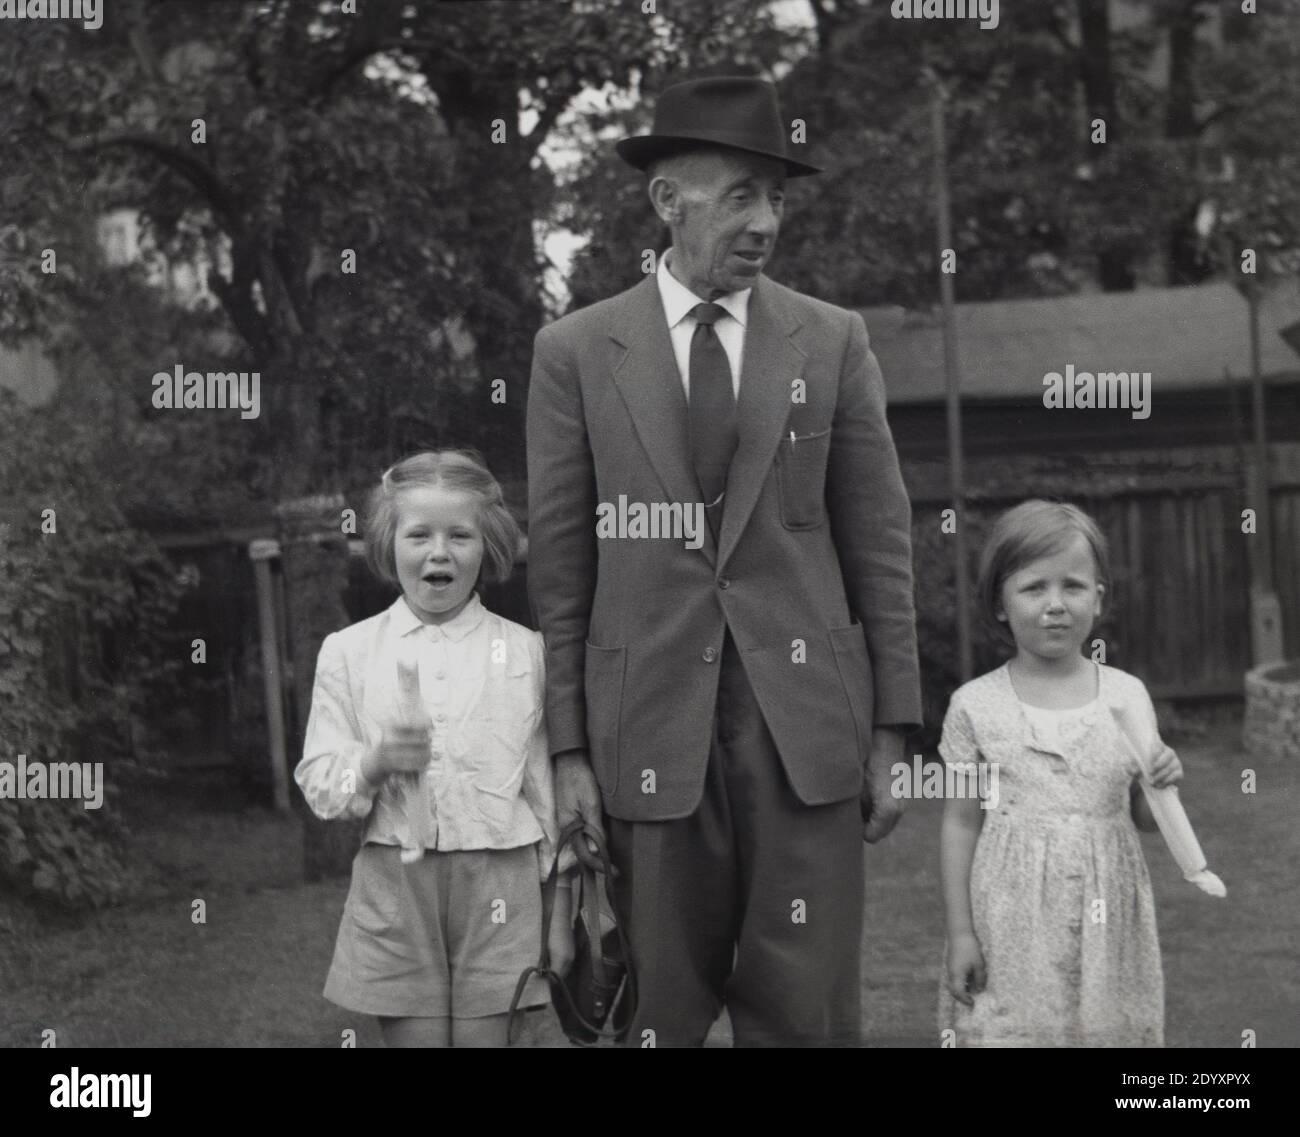 1950er Jahre, historisch, zwei junge Mädchen mit ihrem Großvater, der Anzug und Krawatte und einen dreifachen Hut trägt. Die jungen Mädchen tragen etwas, das aussieht wie Steinstöcke, ein beliebtes Süßes in dieser Zeit. Stockfoto